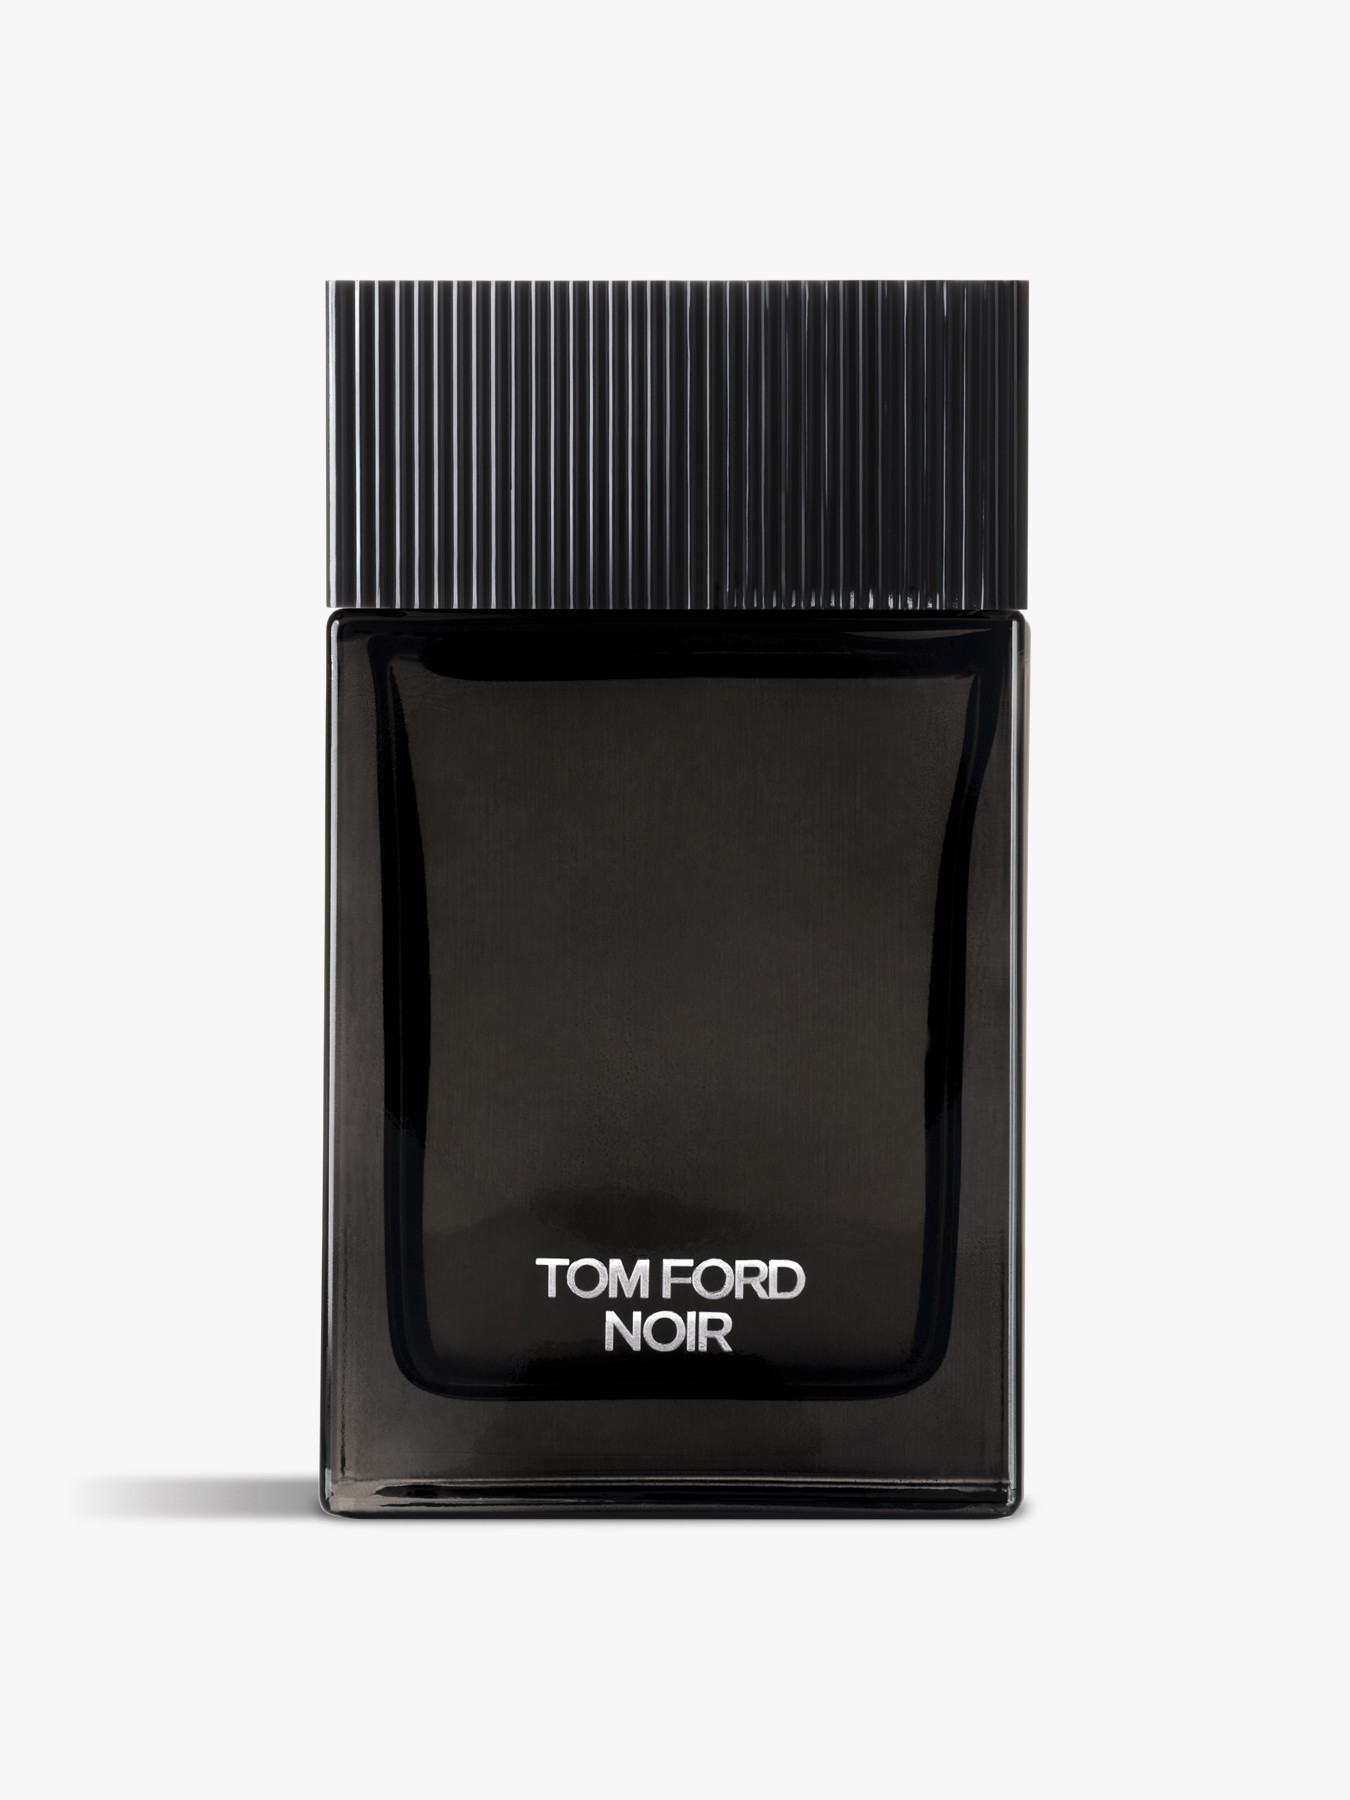 Noir мужской парфюм. Том Форд Ноир 100мл. Tom Ford Noir de Noir for men EDP 100ml. Tom Ford Noir мужской. Парфюм Noir de Noir Tom Ford.